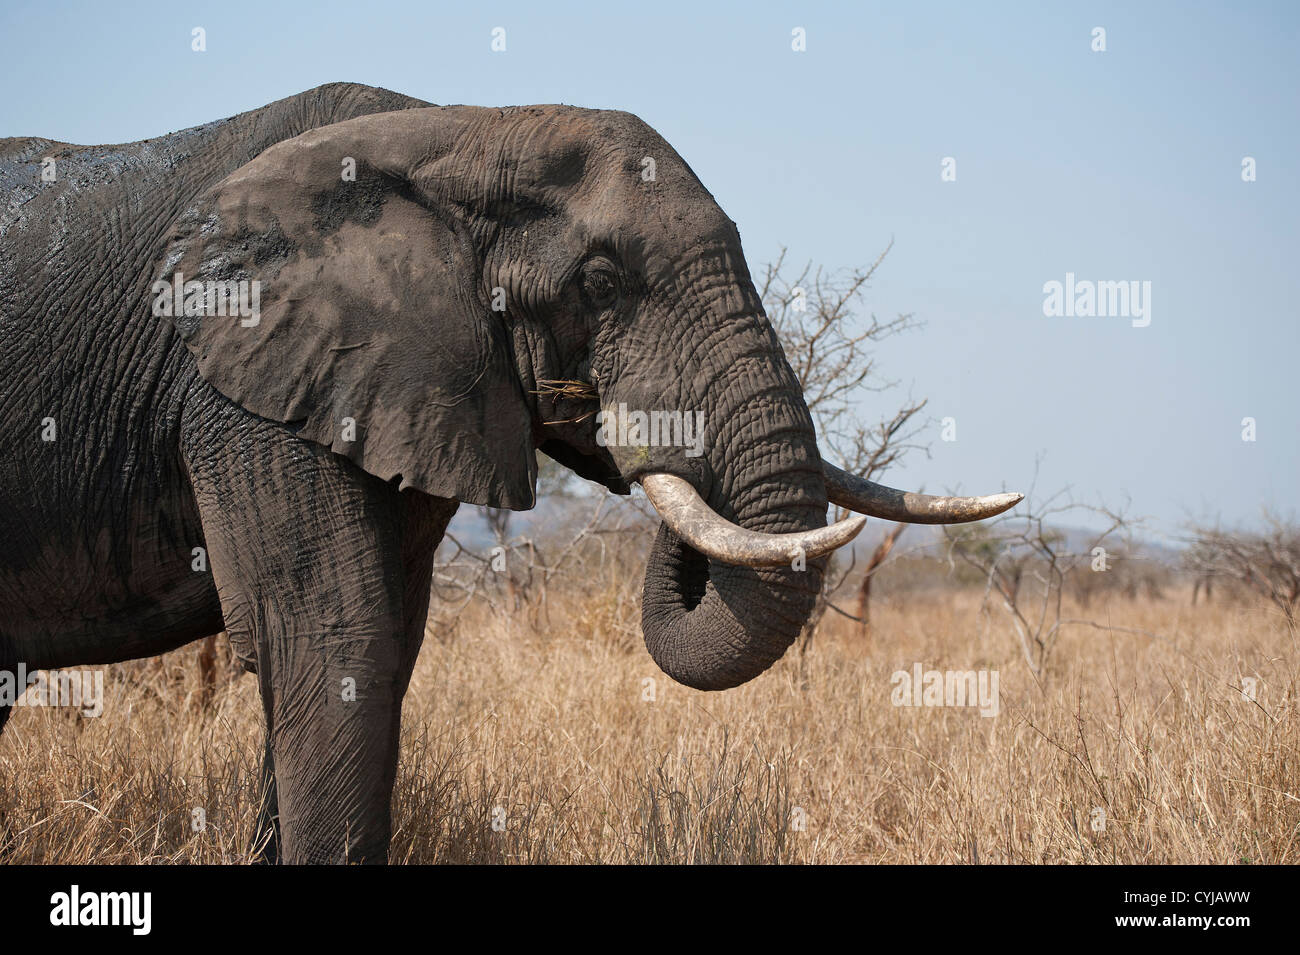 Afrikanisches Elefantenporträt, Loxodonta Africana, mit Stoßzähnen, nass und mit Schlamm bedeckt Stockfoto